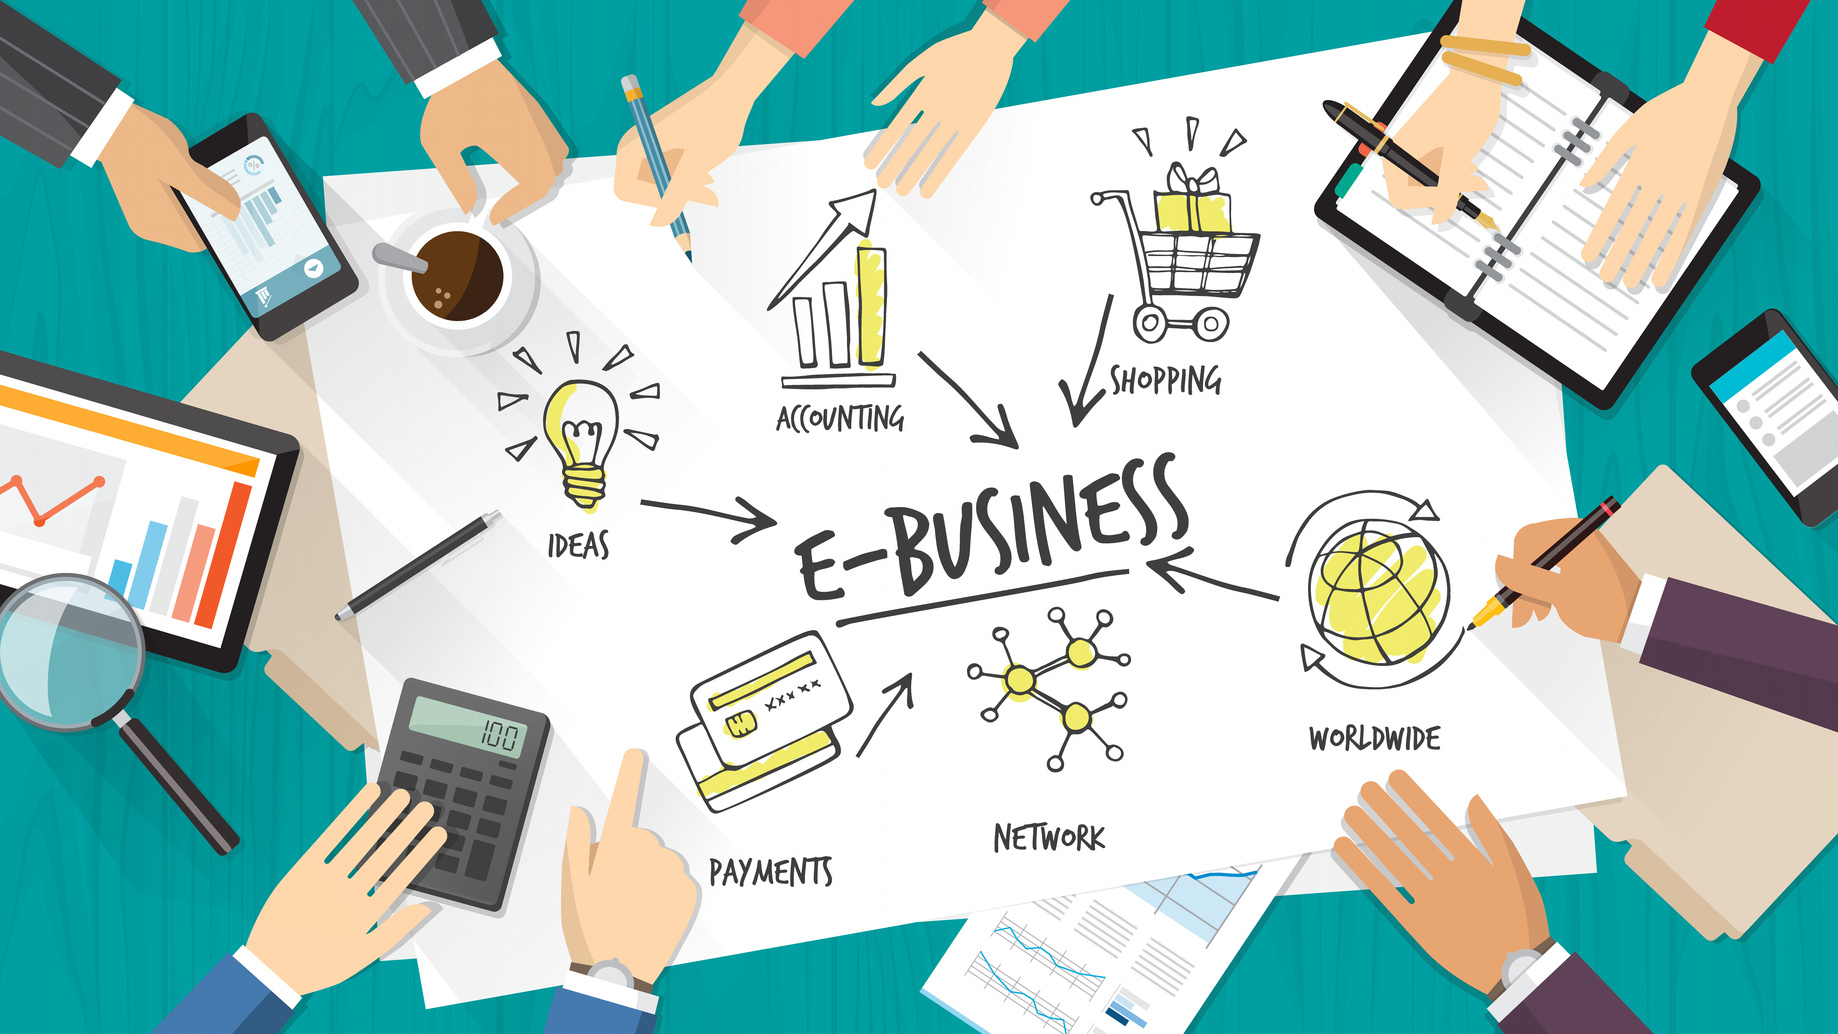 E- Business- Ngành học của các nhà quản lý kinh doanh trong bối cảnh chuyển  đổi số